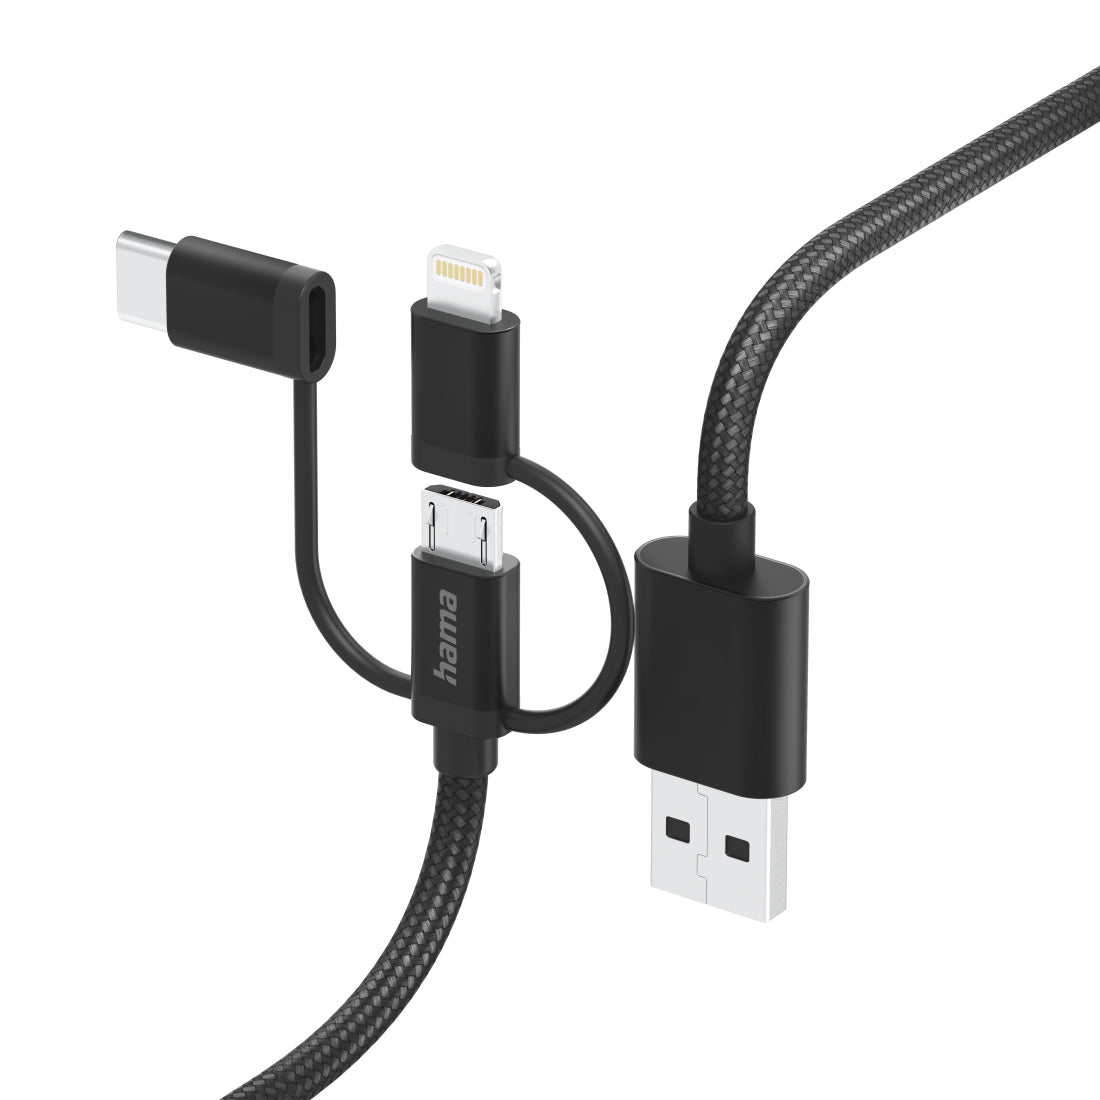 HAMA 3in1 micri USB +USB-C +LTG cable, 1.5m, black